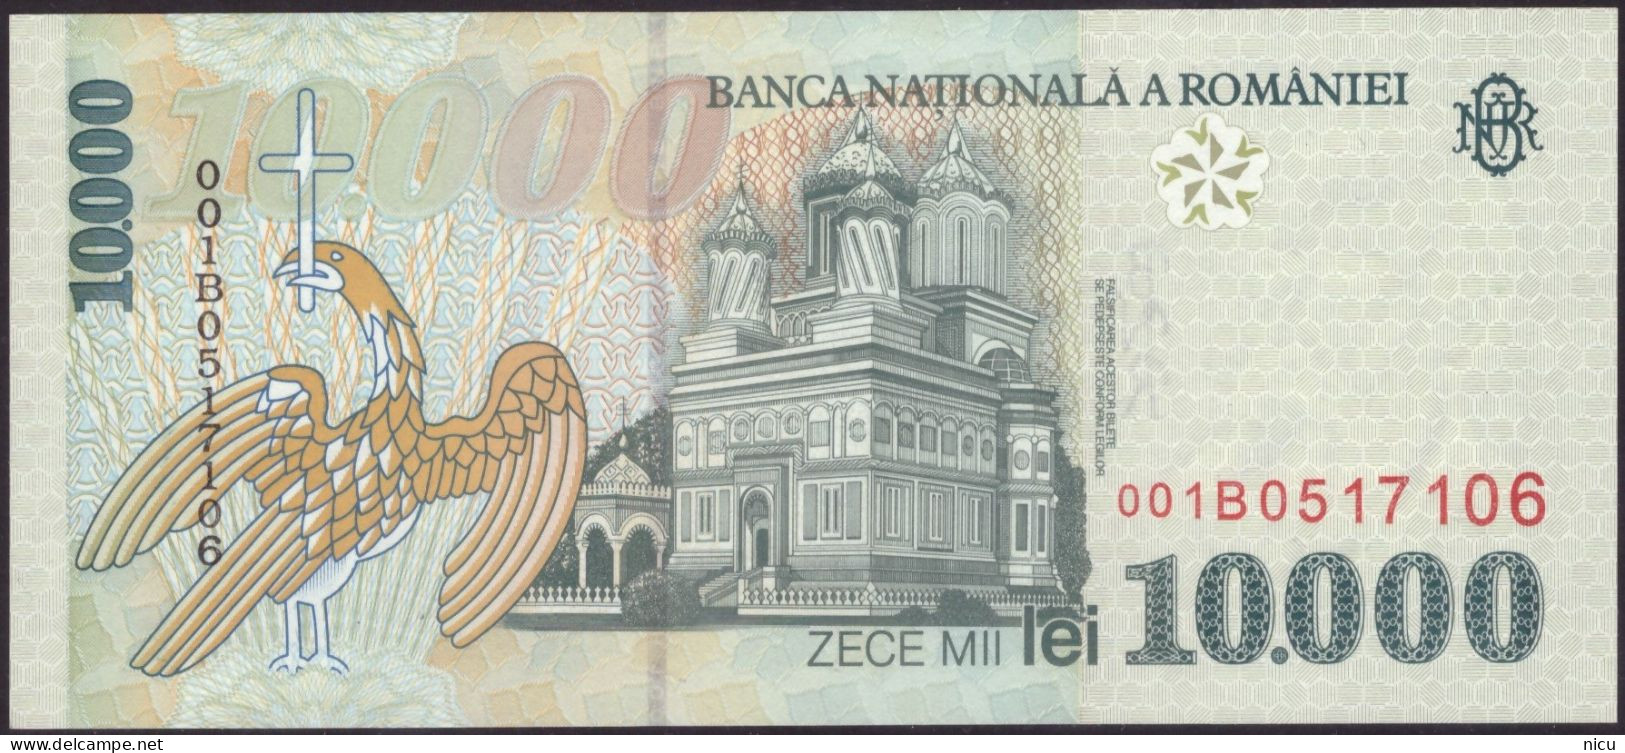 1999 - 10.000LEI BANKNOTE - Roumanie